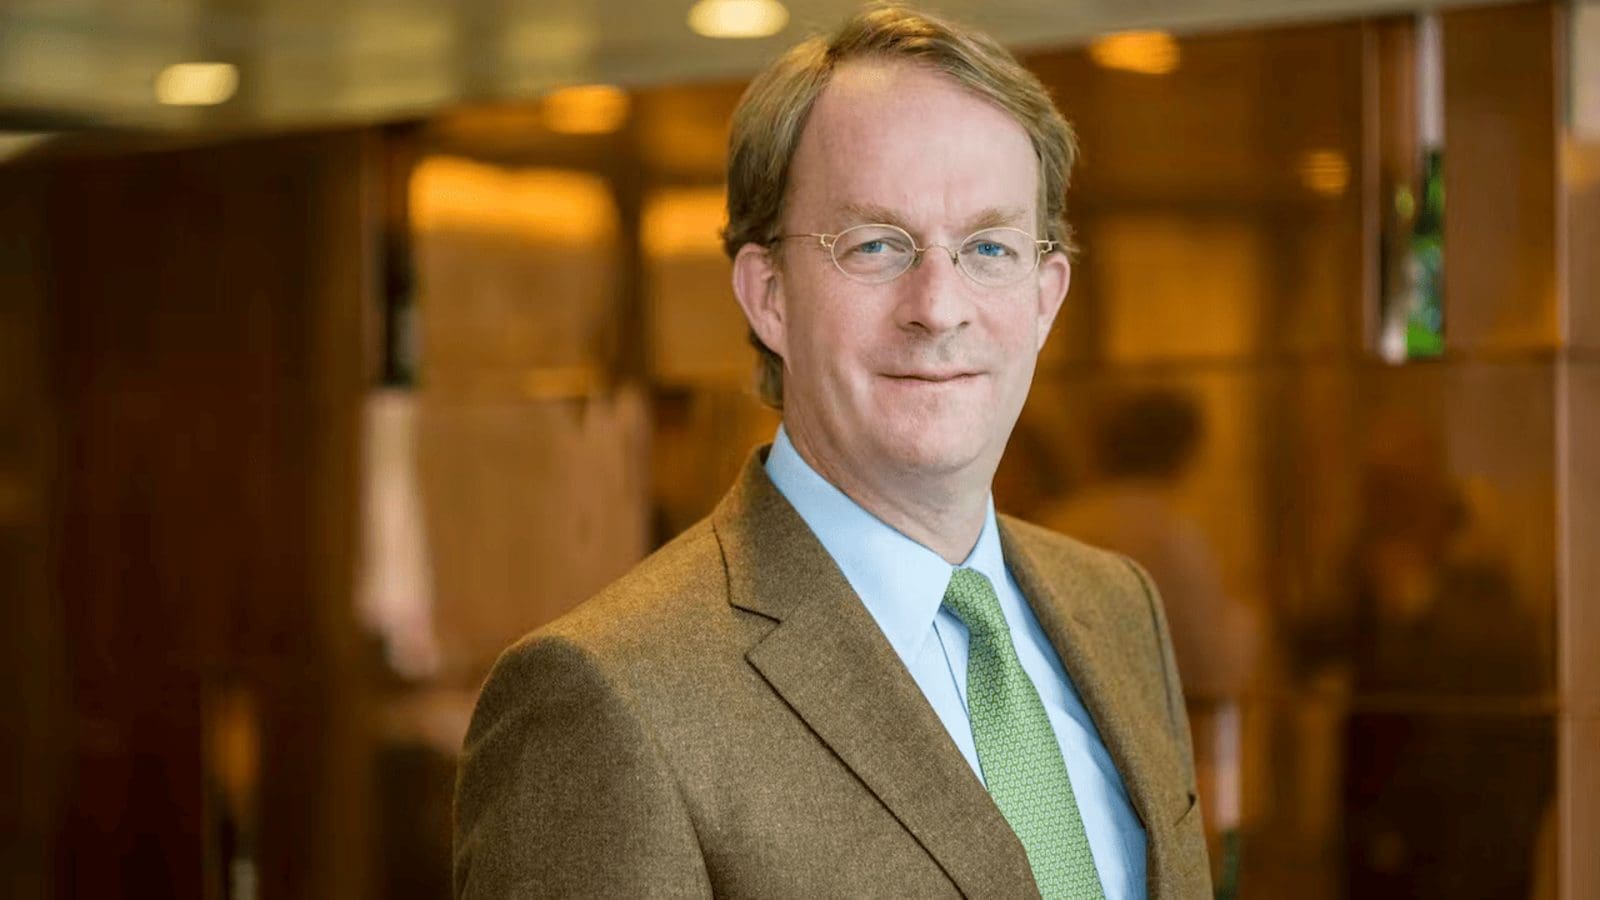 FrieslandCampina appoints GreenV’s CEO Jan Derck van Karnebeek to take helm